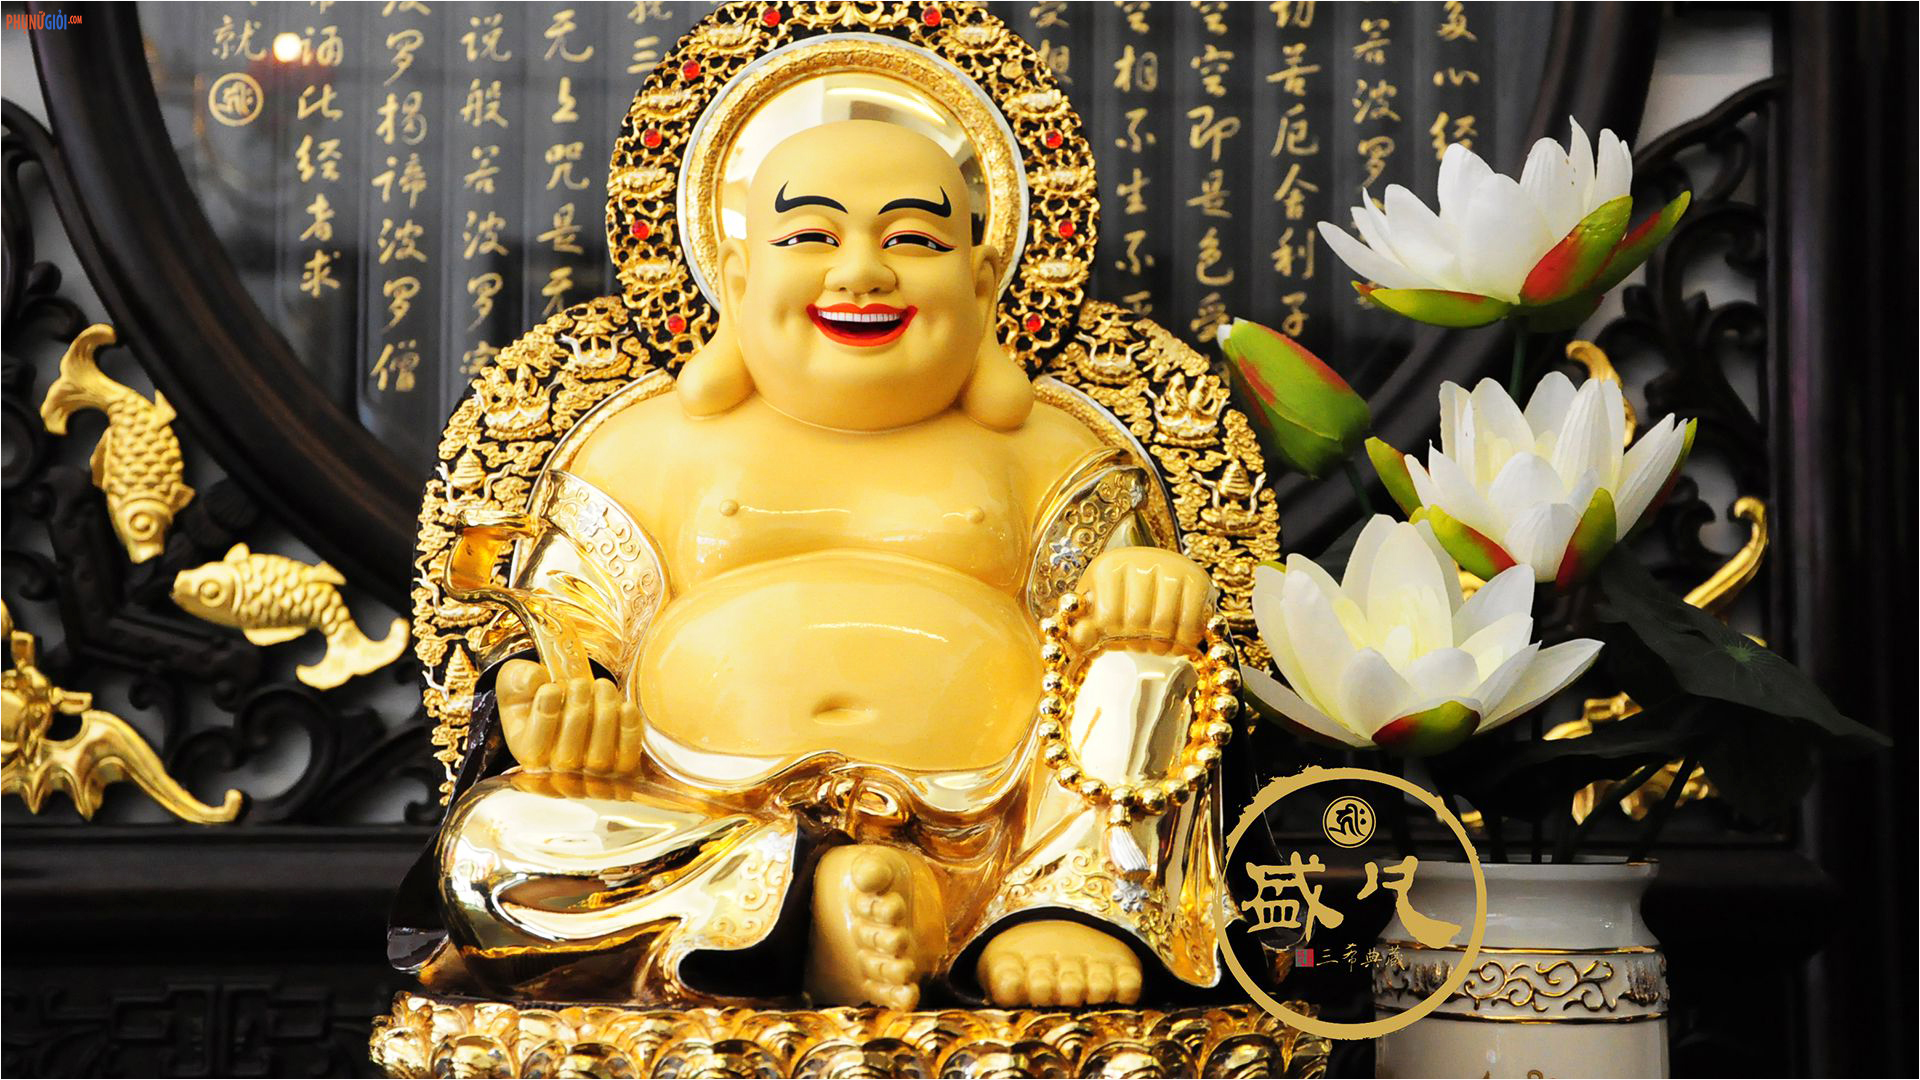 Tướng nụ cười trên khuôn mặt của Phật Di Lặc sẽ khiến bạn cảm thấy yên bình và đầy niềm vui. Hãy đến và chiêm ngưỡng vẻ đẹp của tượng Phật Di Lặc này. Đây sẽ là một trải nghiệm thật tuyệt vời.